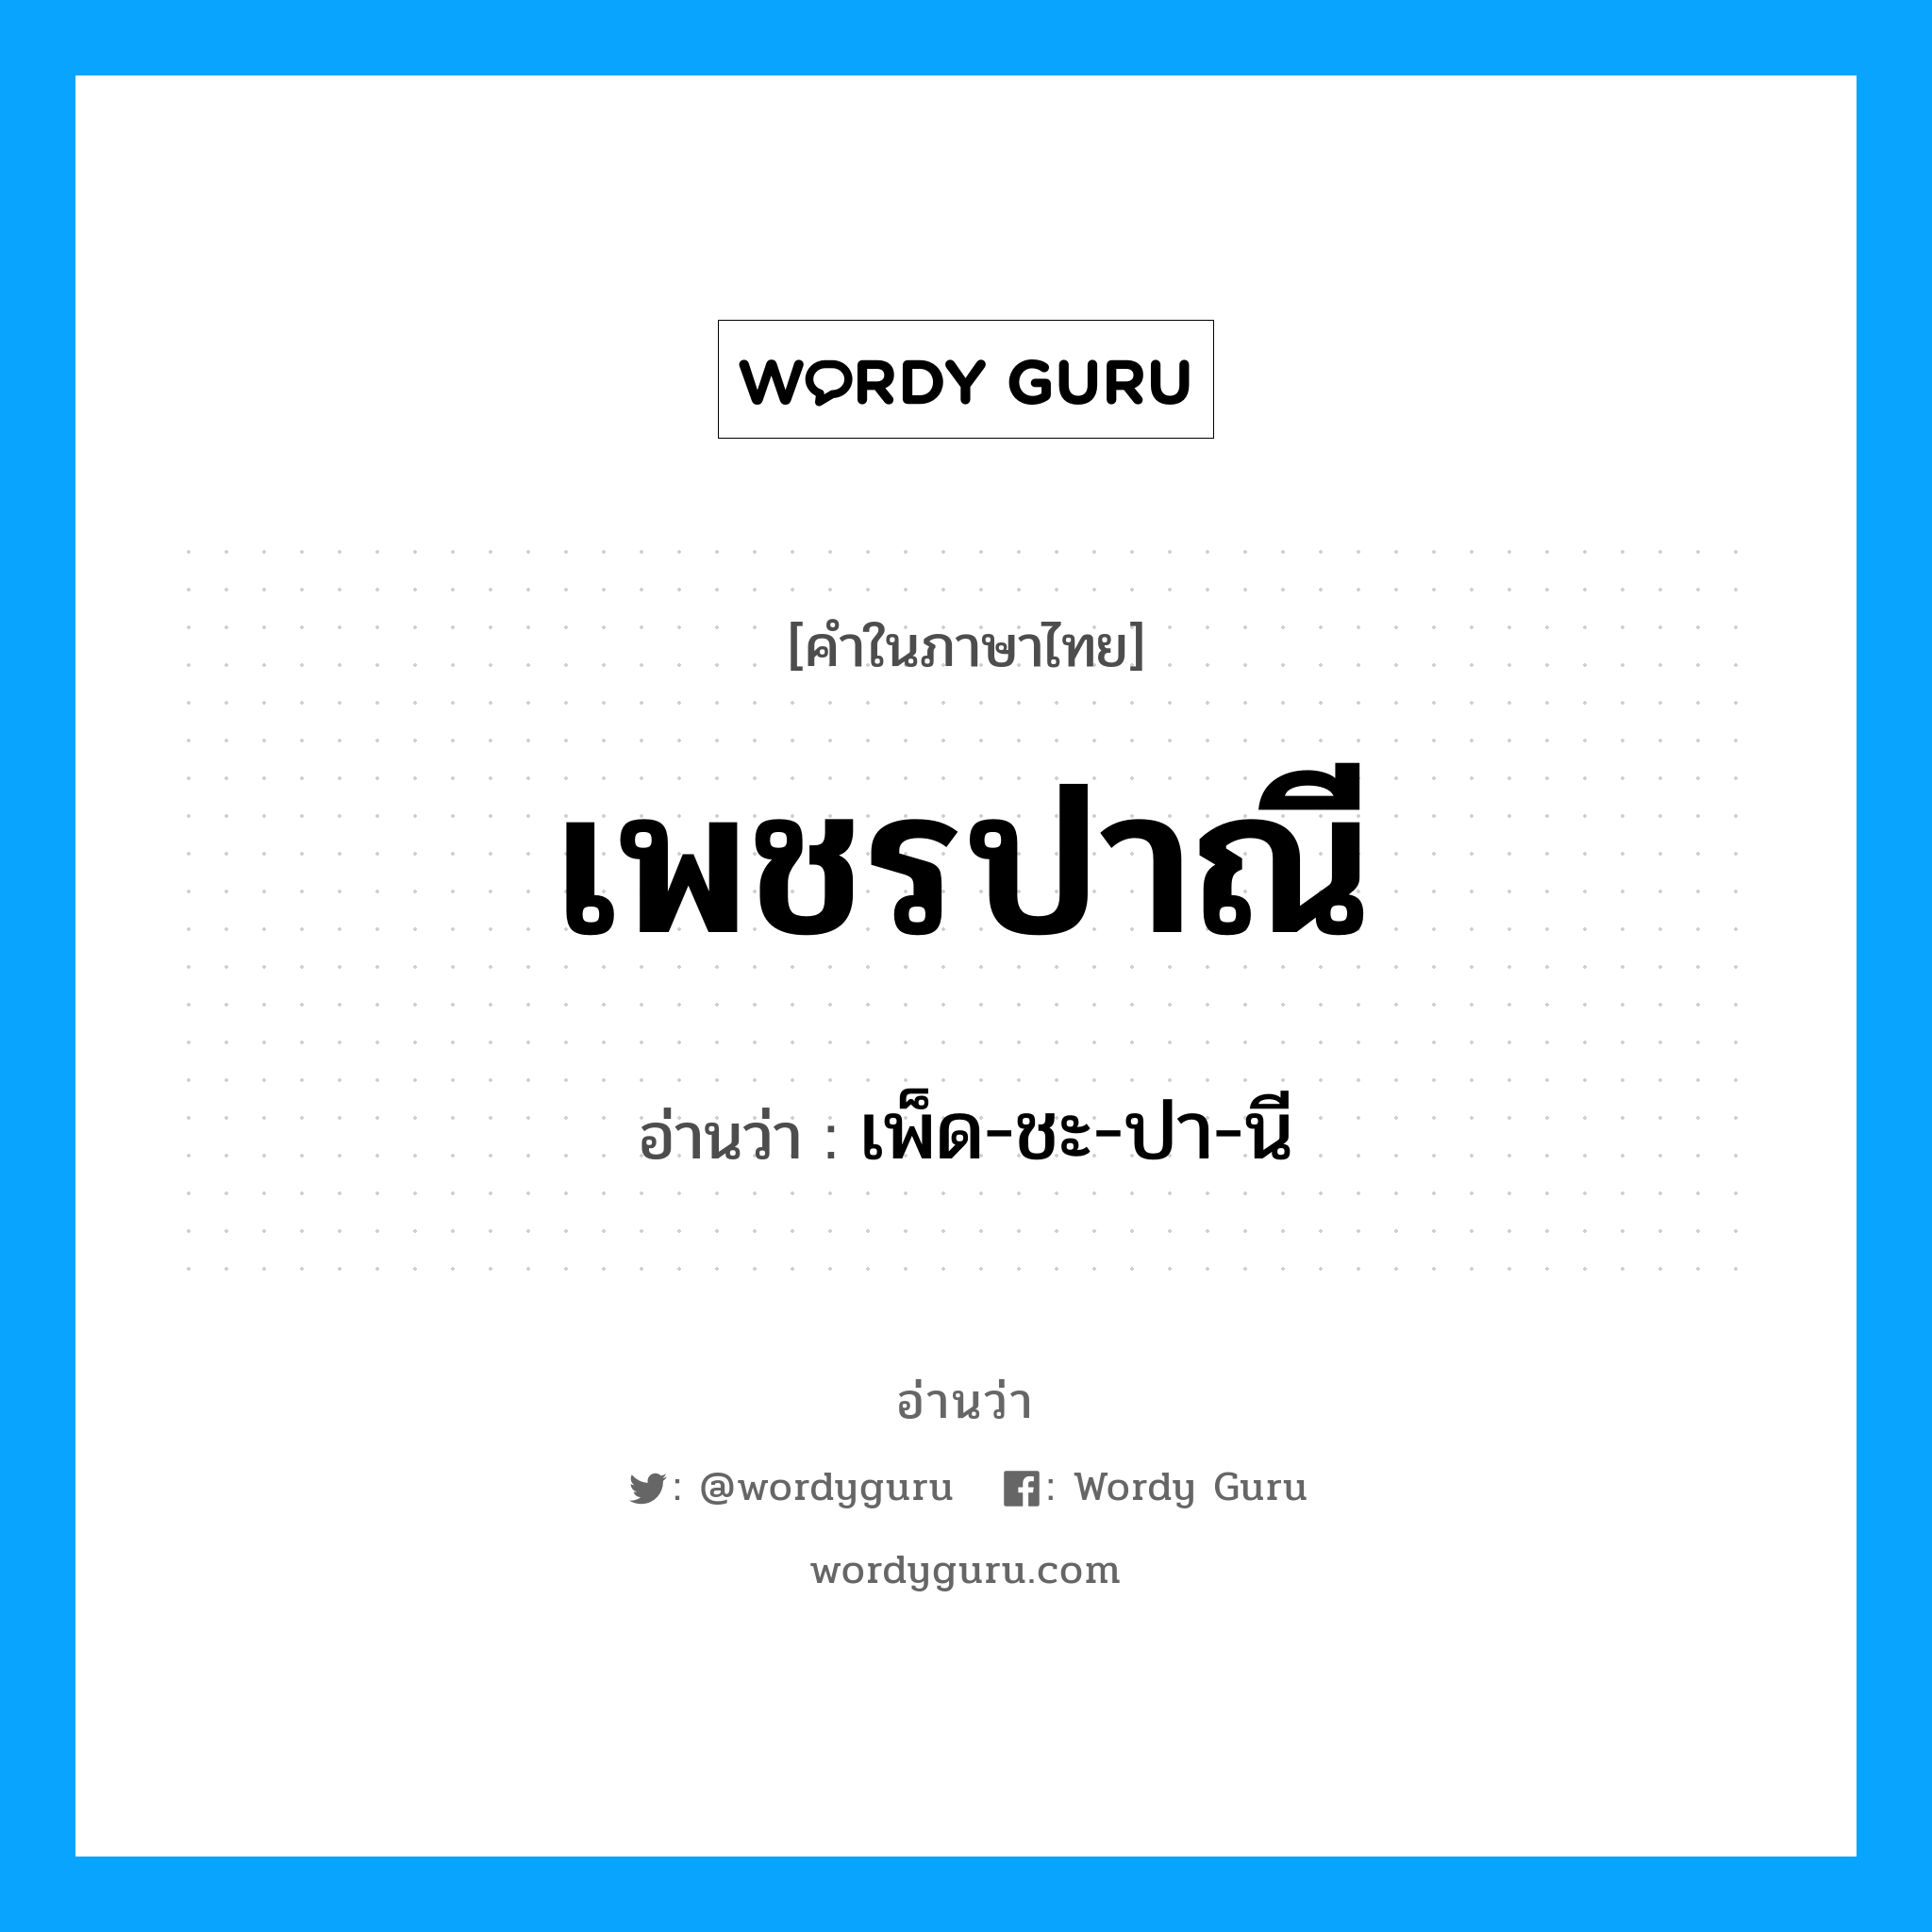 เพ็ด-ชะ-ปา-นี เป็นคำอ่านของคำไหน?, คำในภาษาไทย เพ็ด-ชะ-ปา-นี อ่านว่า เพชรปาณี